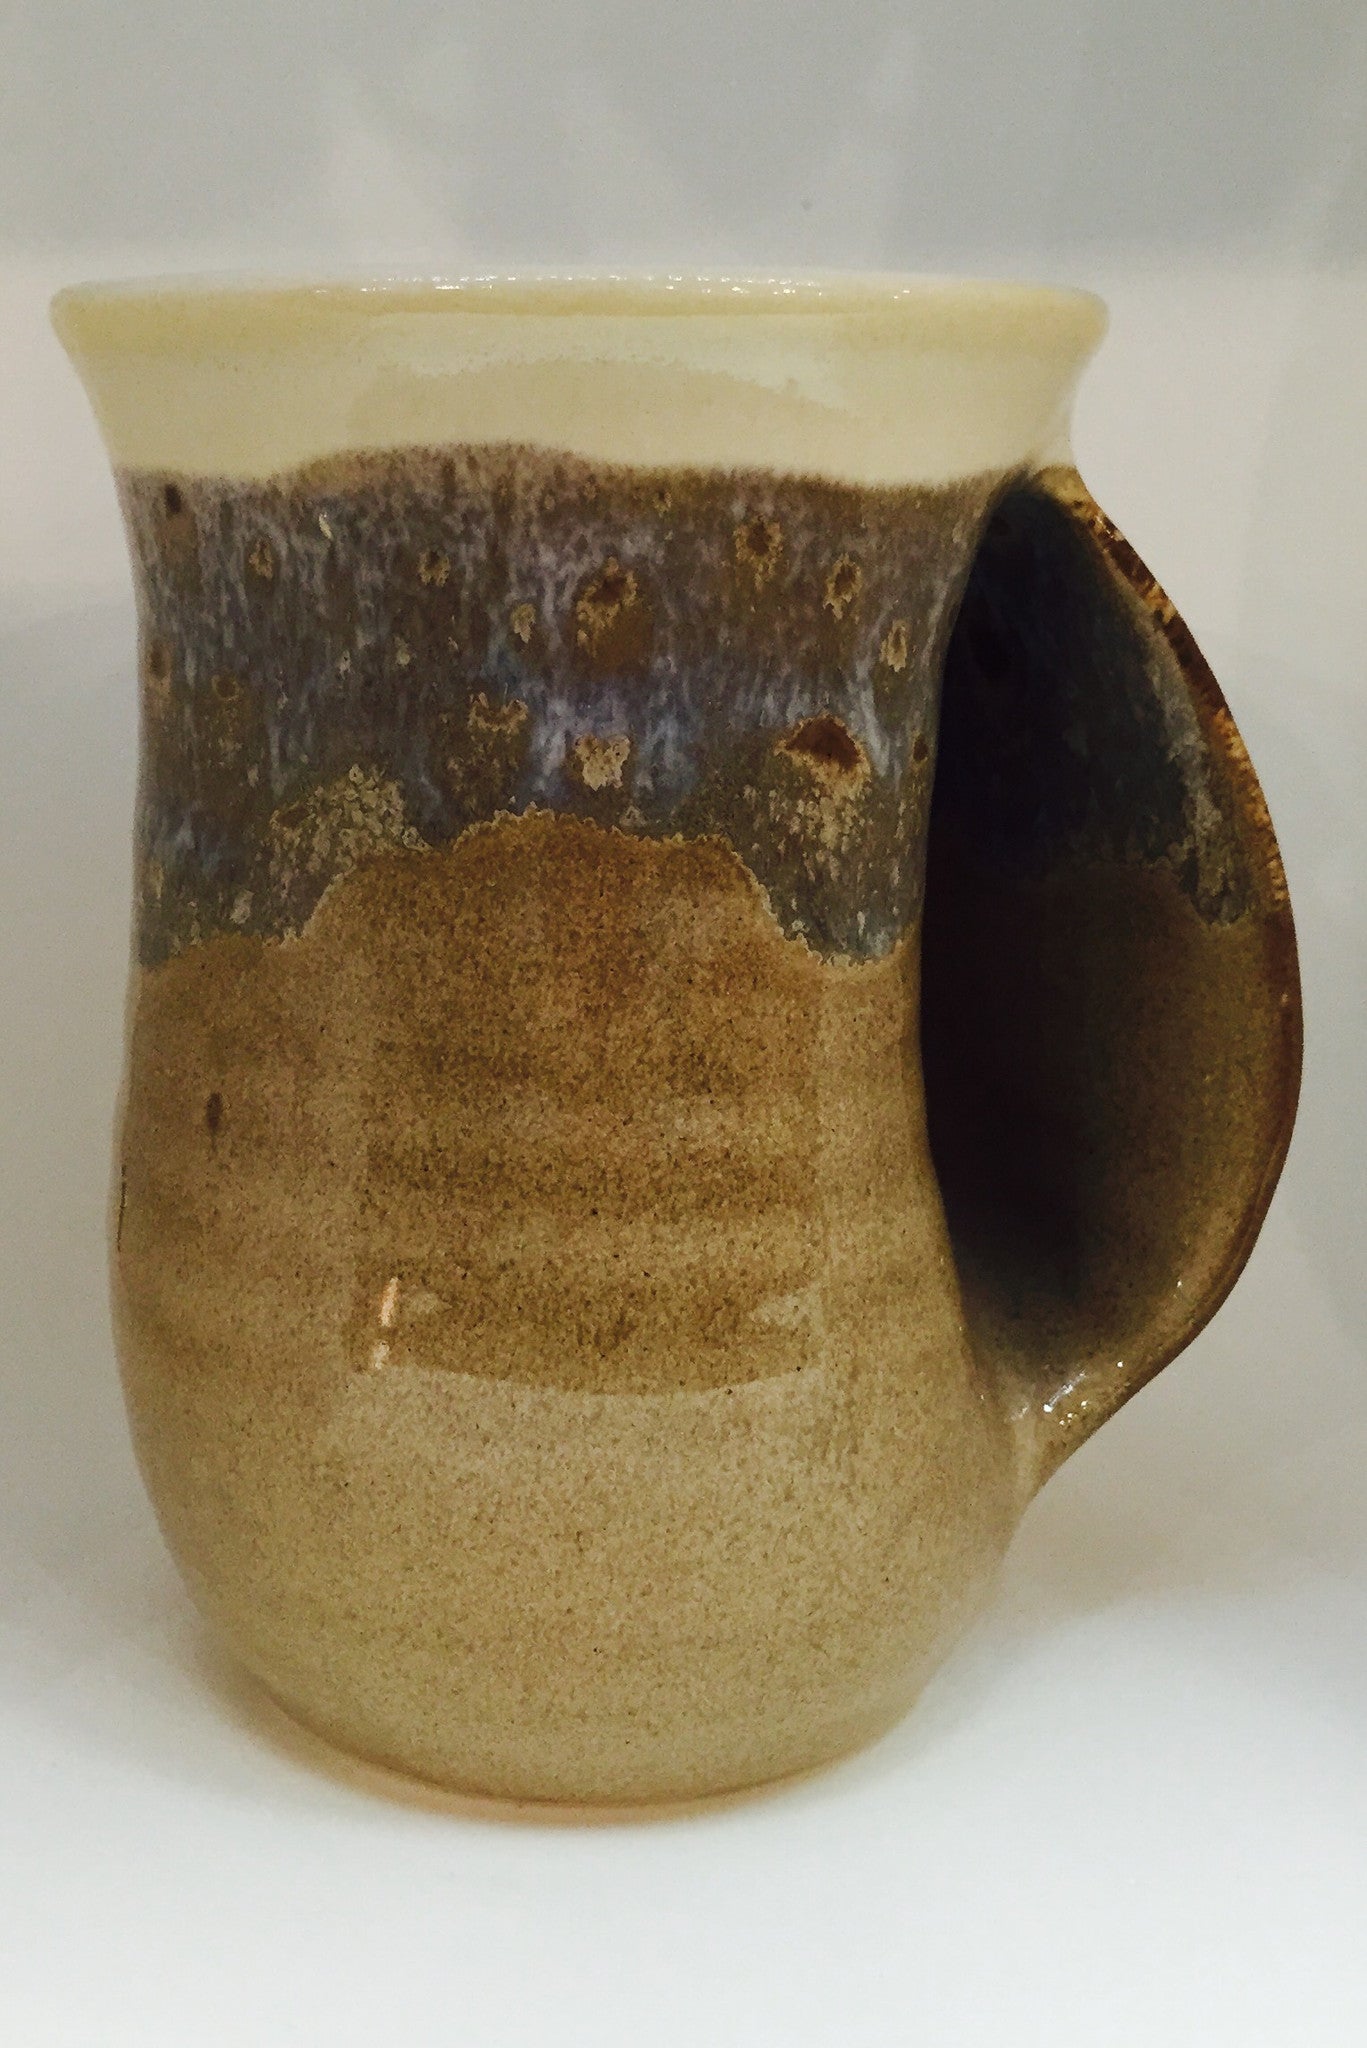 Desert Sand Right Handed Mug